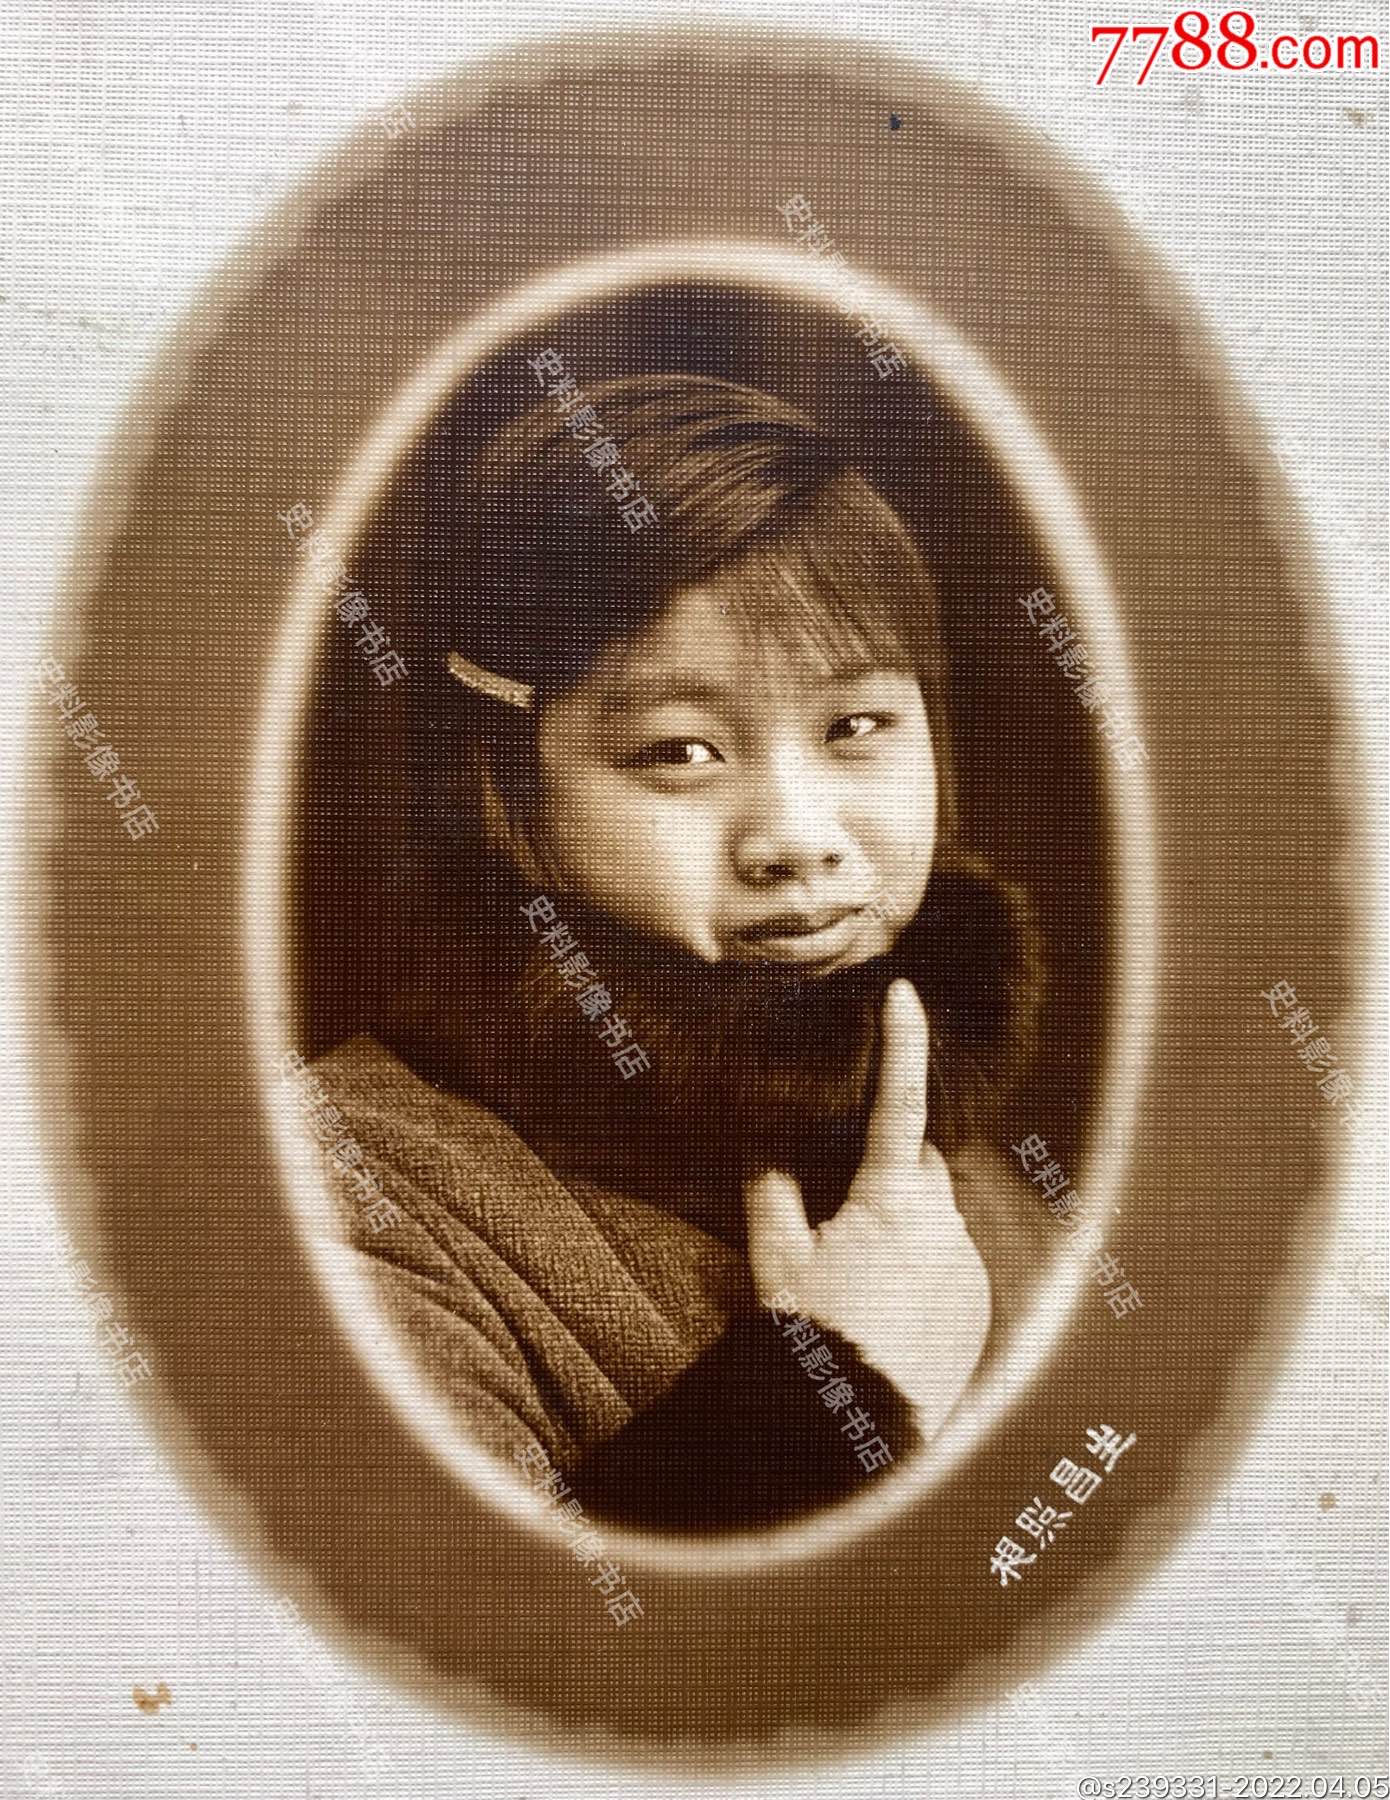 民国时期生昌照相馆拍摄貂领冬装短发女学生肖像照一张